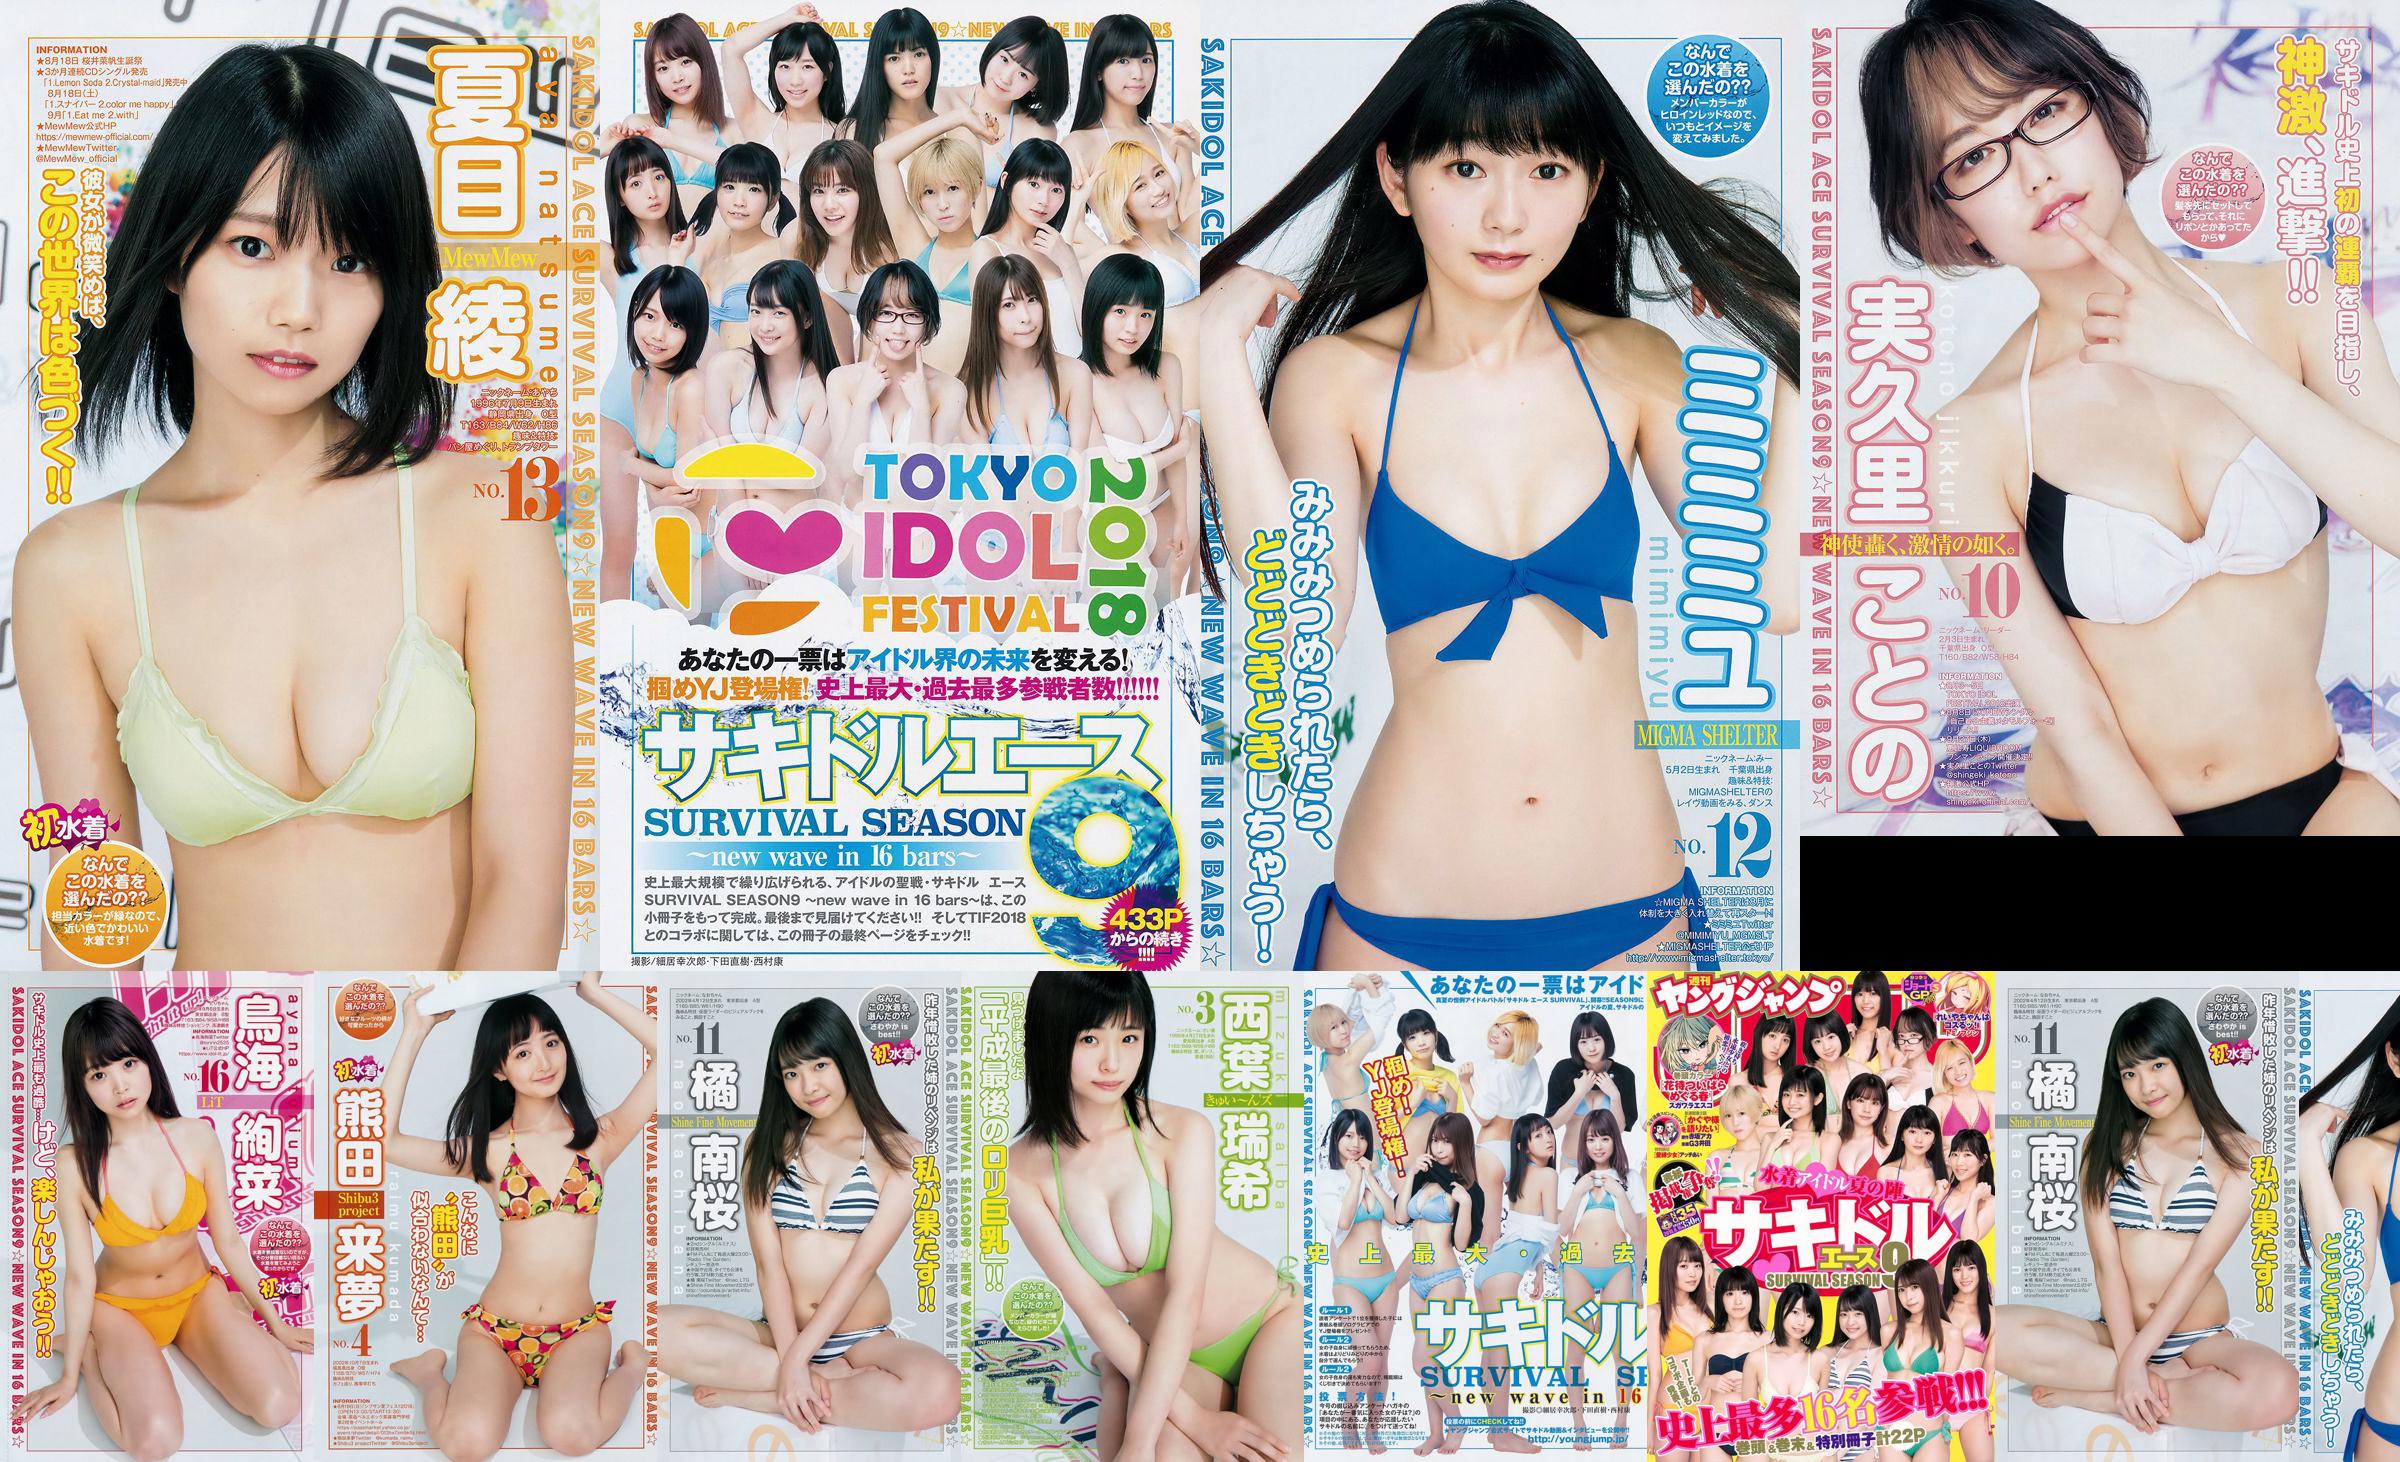 [FLASH] Ikumi Hisamatsu Risa Hirako Ren Ishikawa Angel Moe AKB48 Kaho Shibuya Misuzu Hayashi Ririka 2015.04.21 รูปภาพ Toshi No.b9e19e หน้า 3